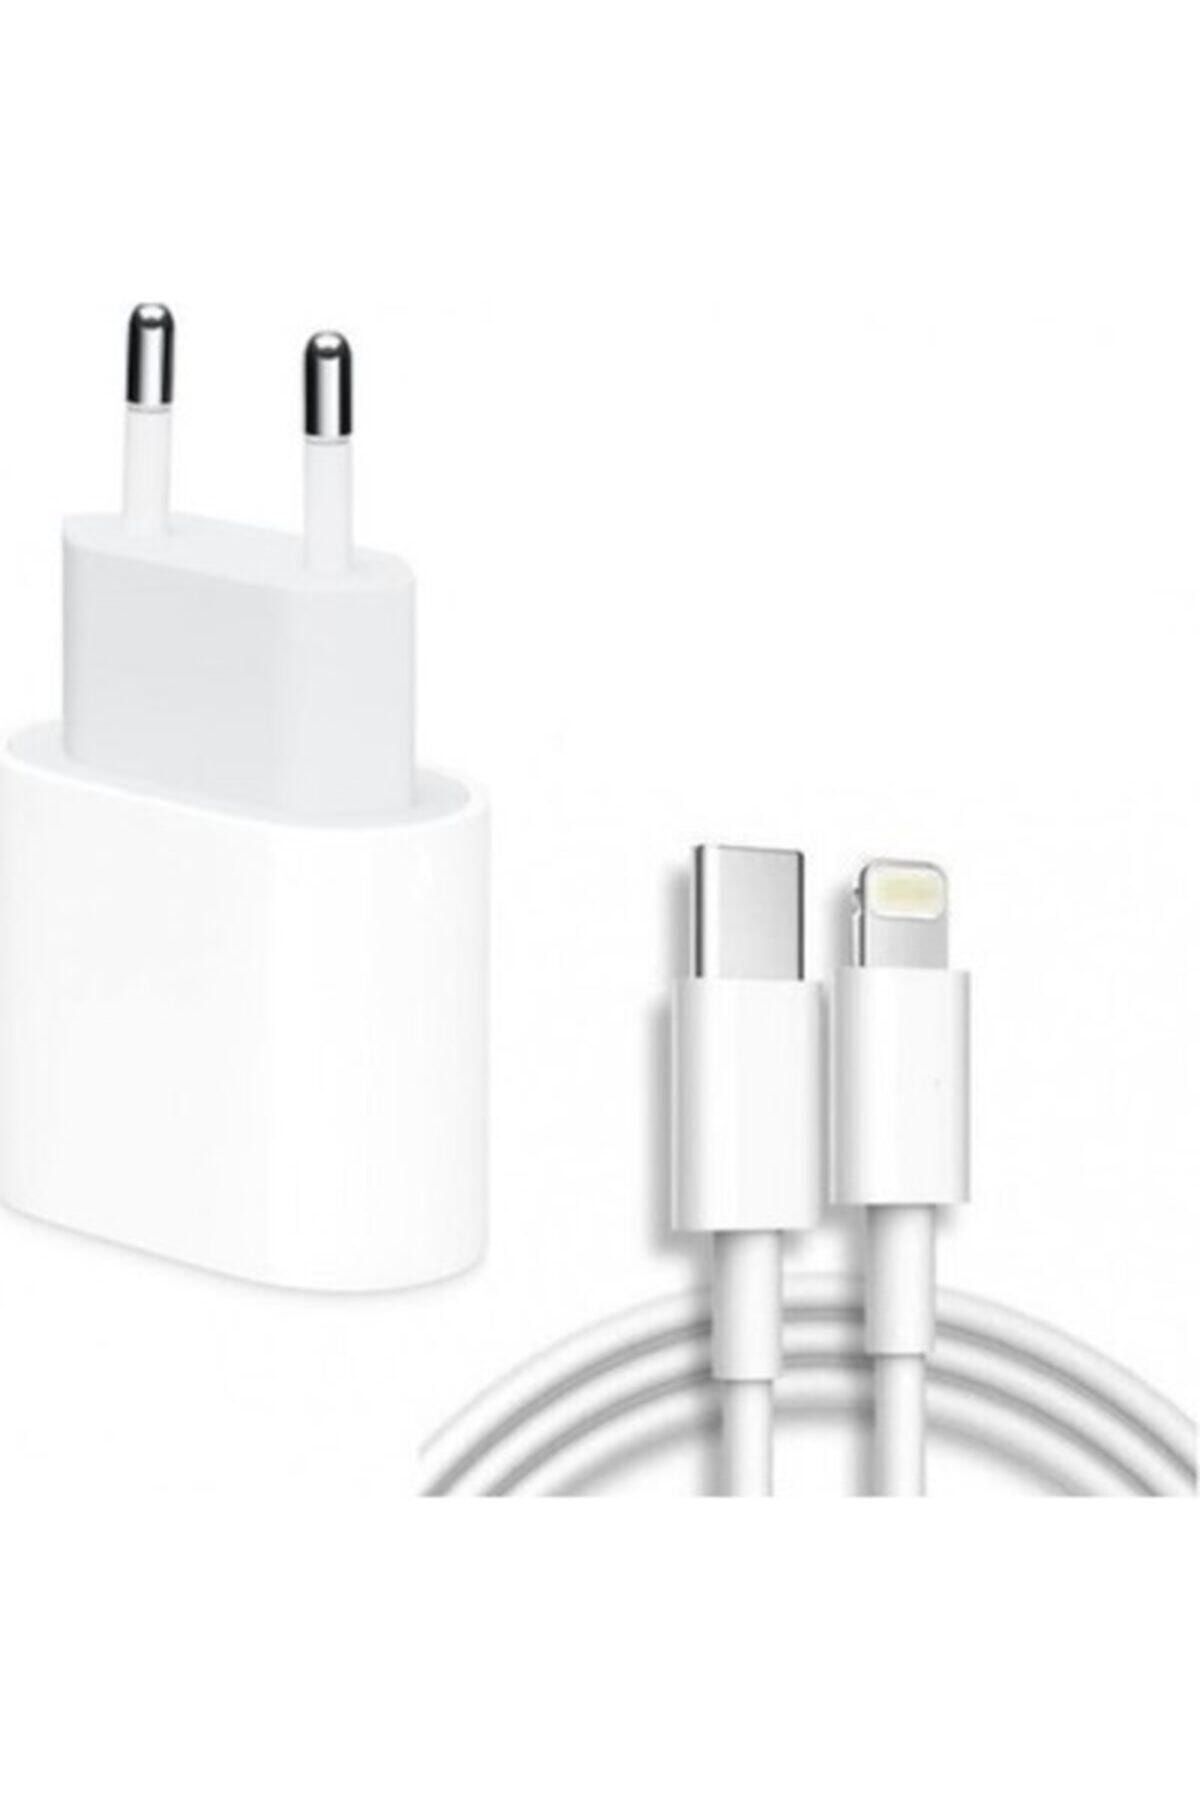 intermax Apple Uyumlu 20watt 11/12/13/14 Pro Yeni Nesil Typc Girişli Hızlı Adaptör-1m Kablo (SET)